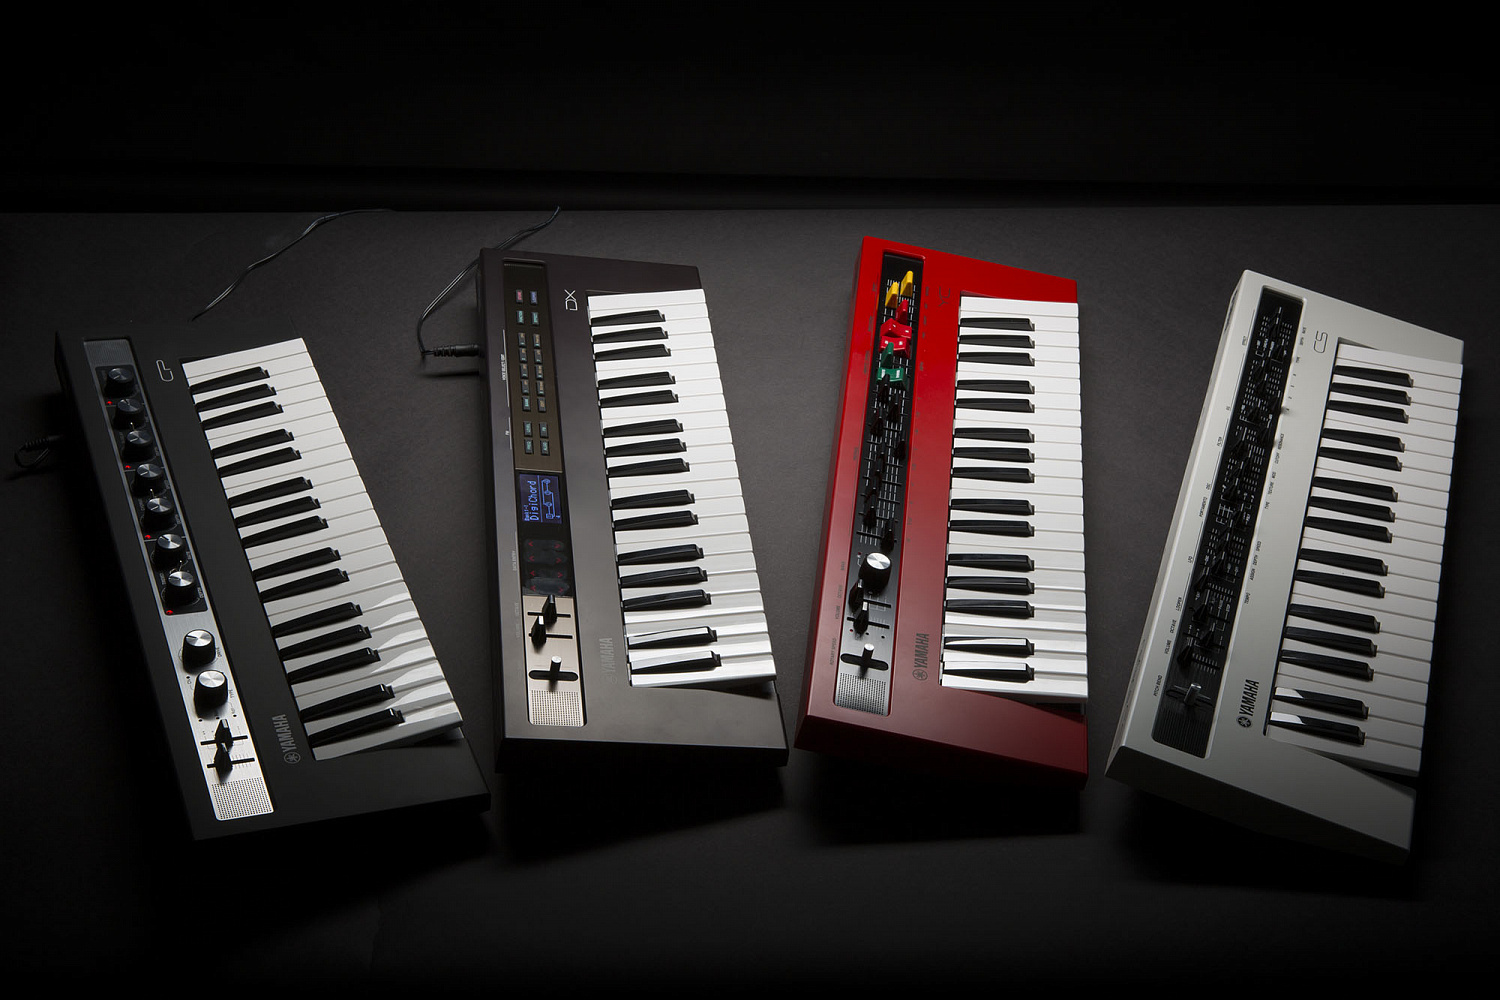 Yamaha Reface воссоздает старые мощные звуки. Серия компактных синтезаторов достойного качества с ретро дизайном.